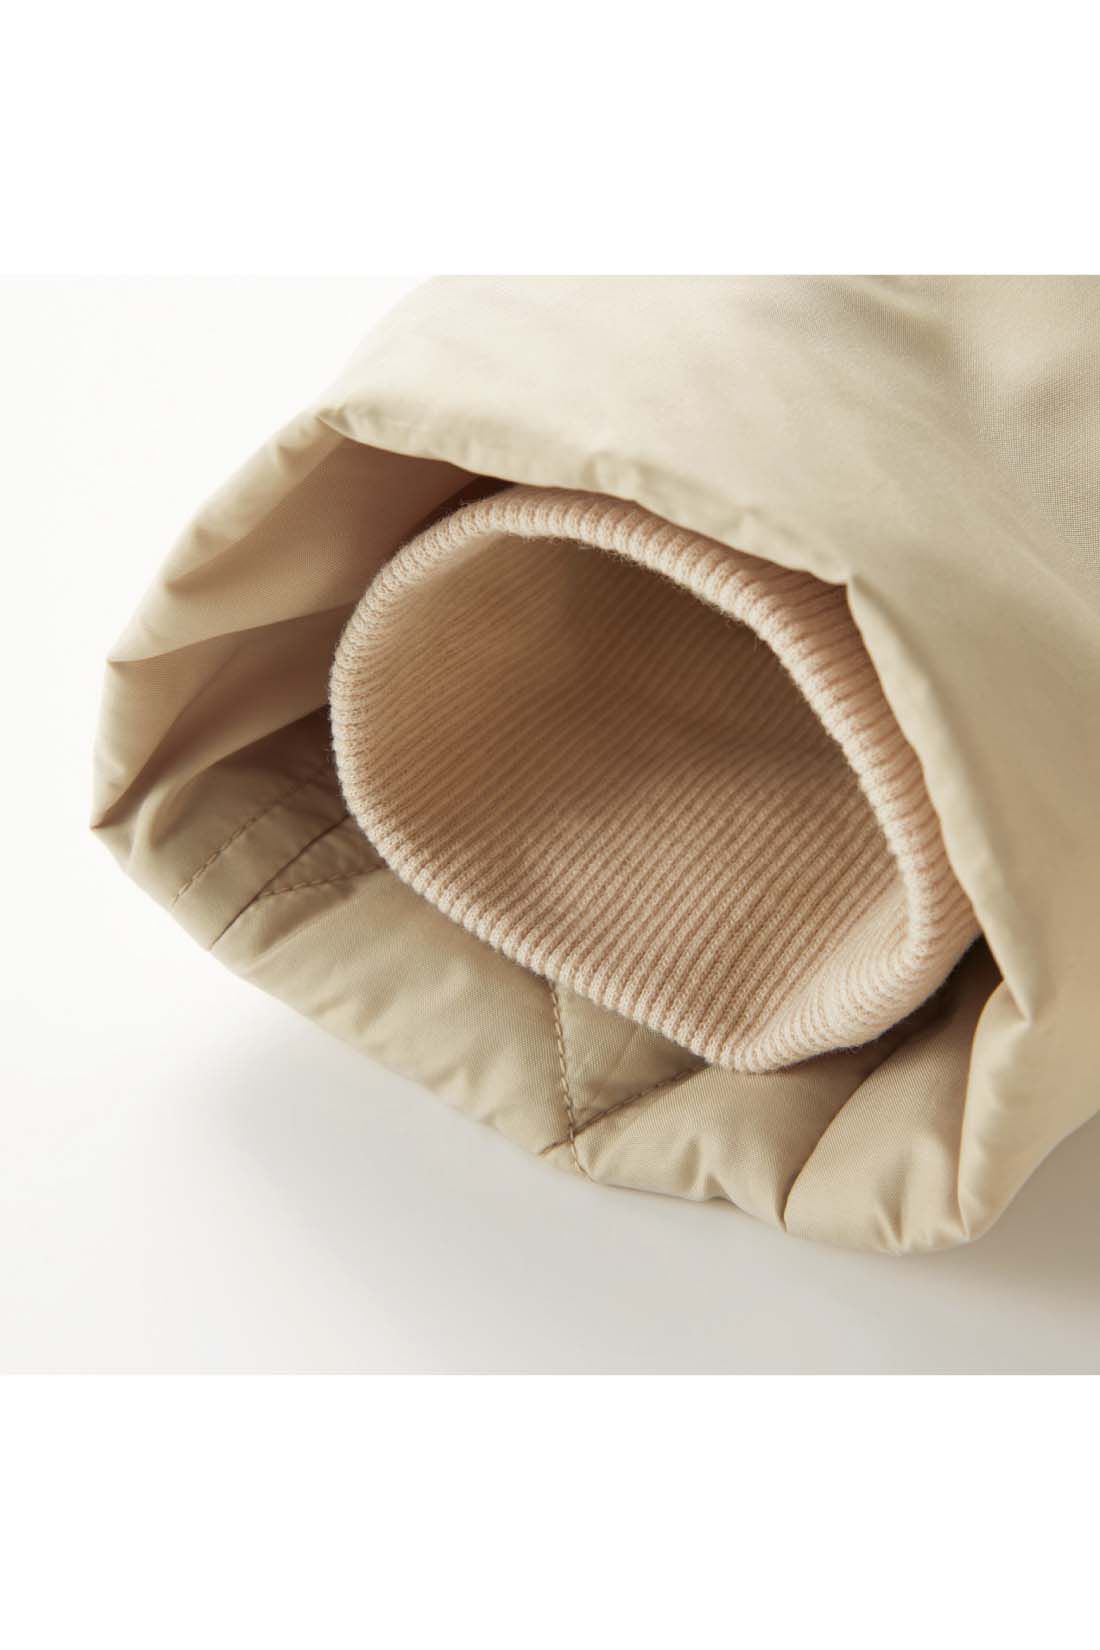 Live in  comfort|リブ イン コンフォート　寝袋みたいにあったか！細見せにこだわった撥水（はっすい）超ロングダウンコート〈ライトベージュ〉|すっきり見える袖口は、すき間風を防ぐため内側にリブをしのばせています。